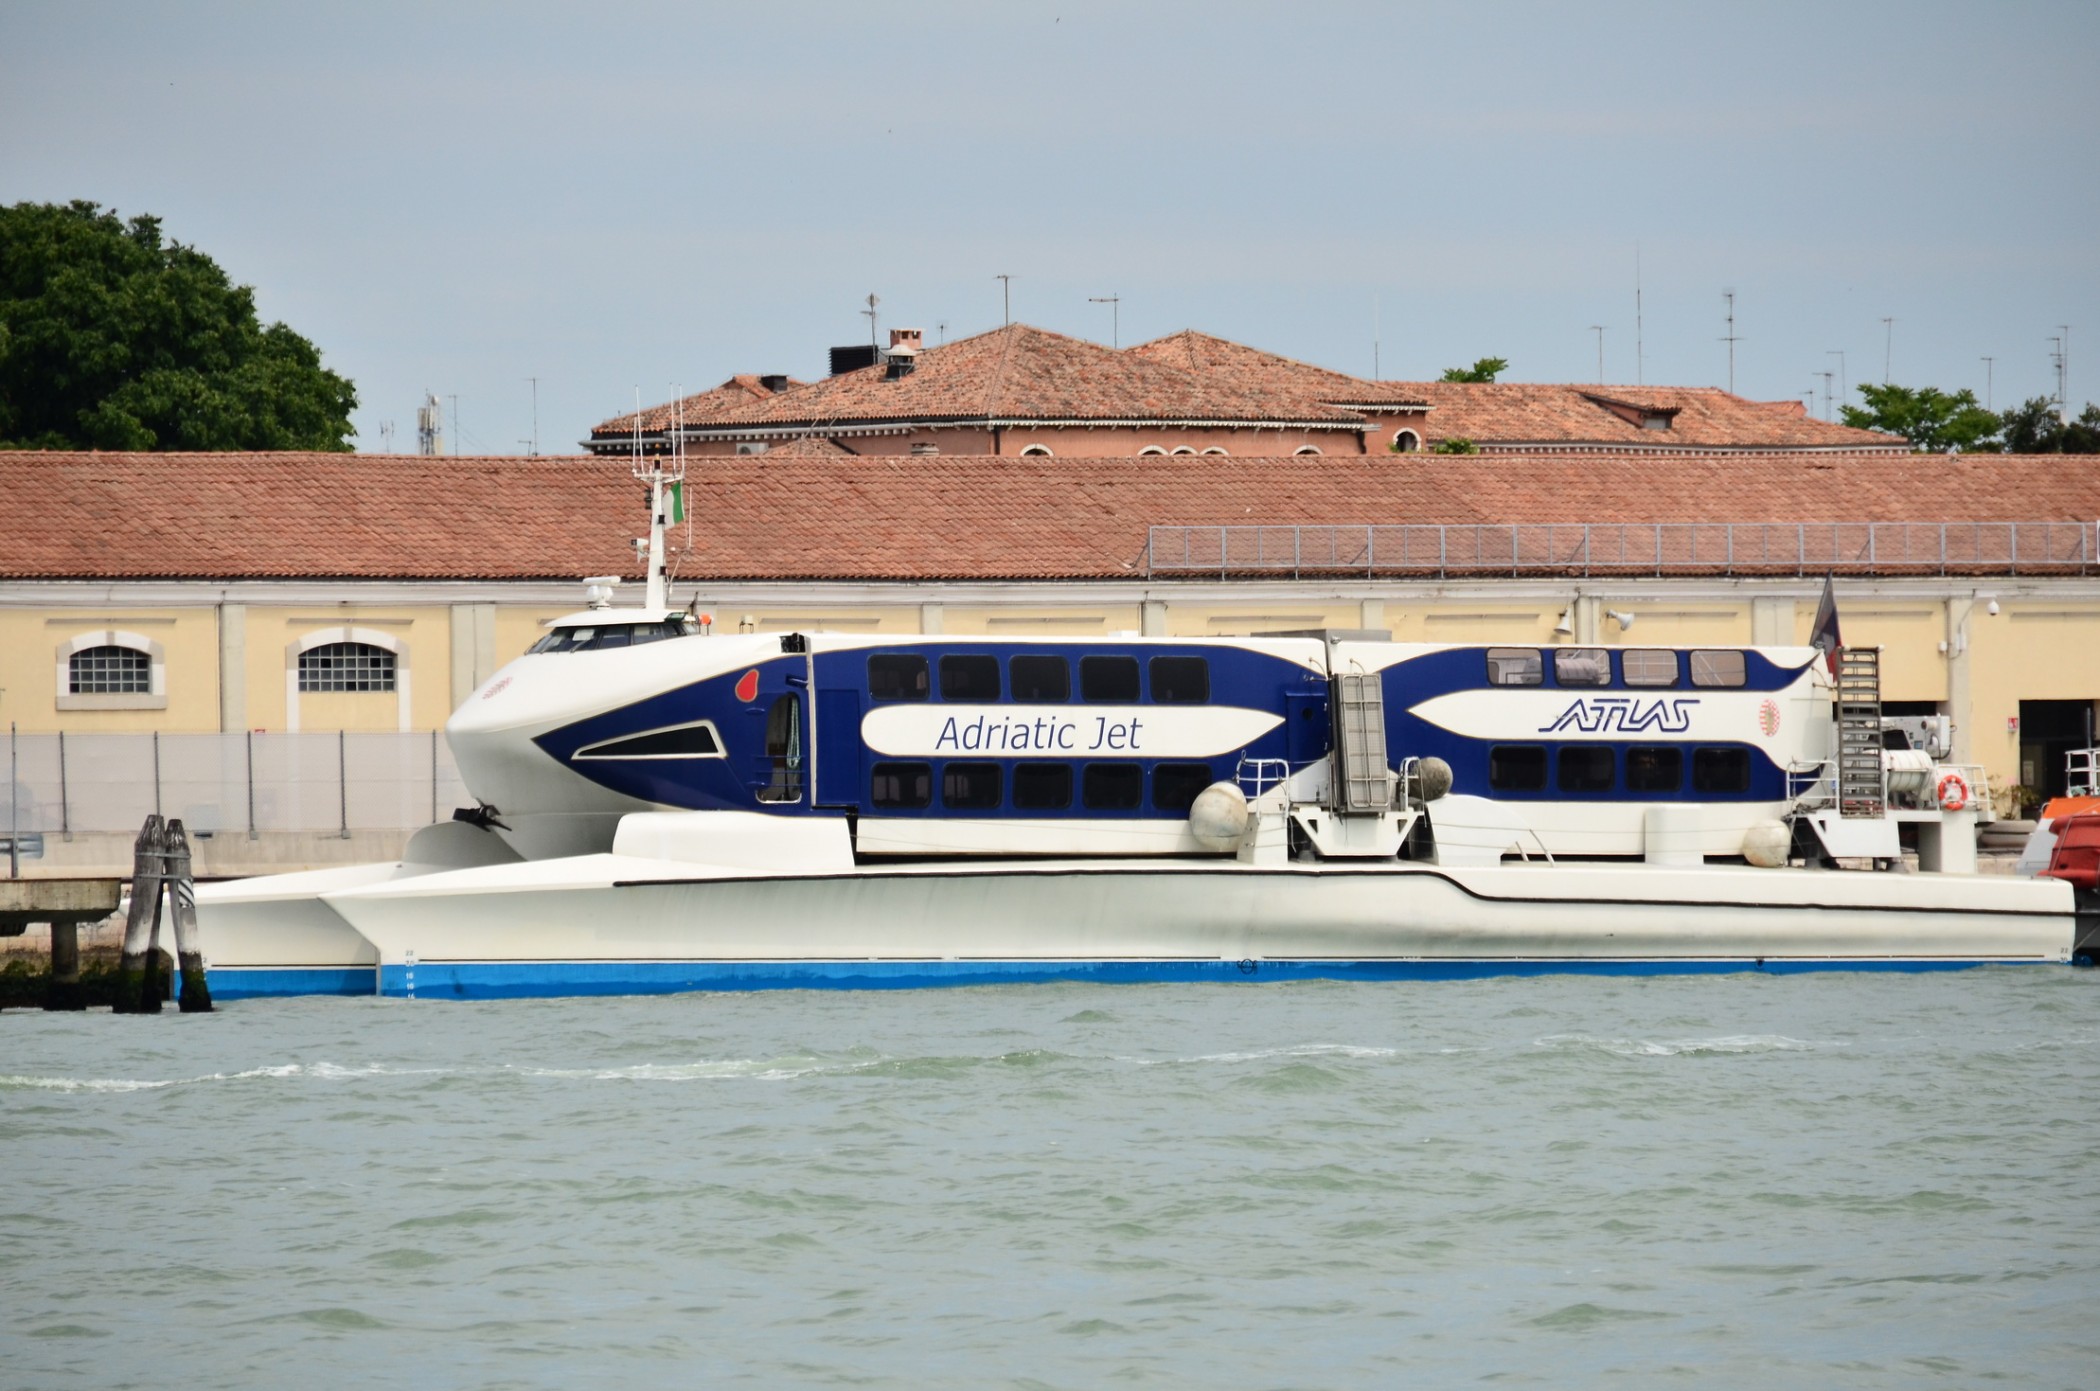 Adriatic Jet at Venezia